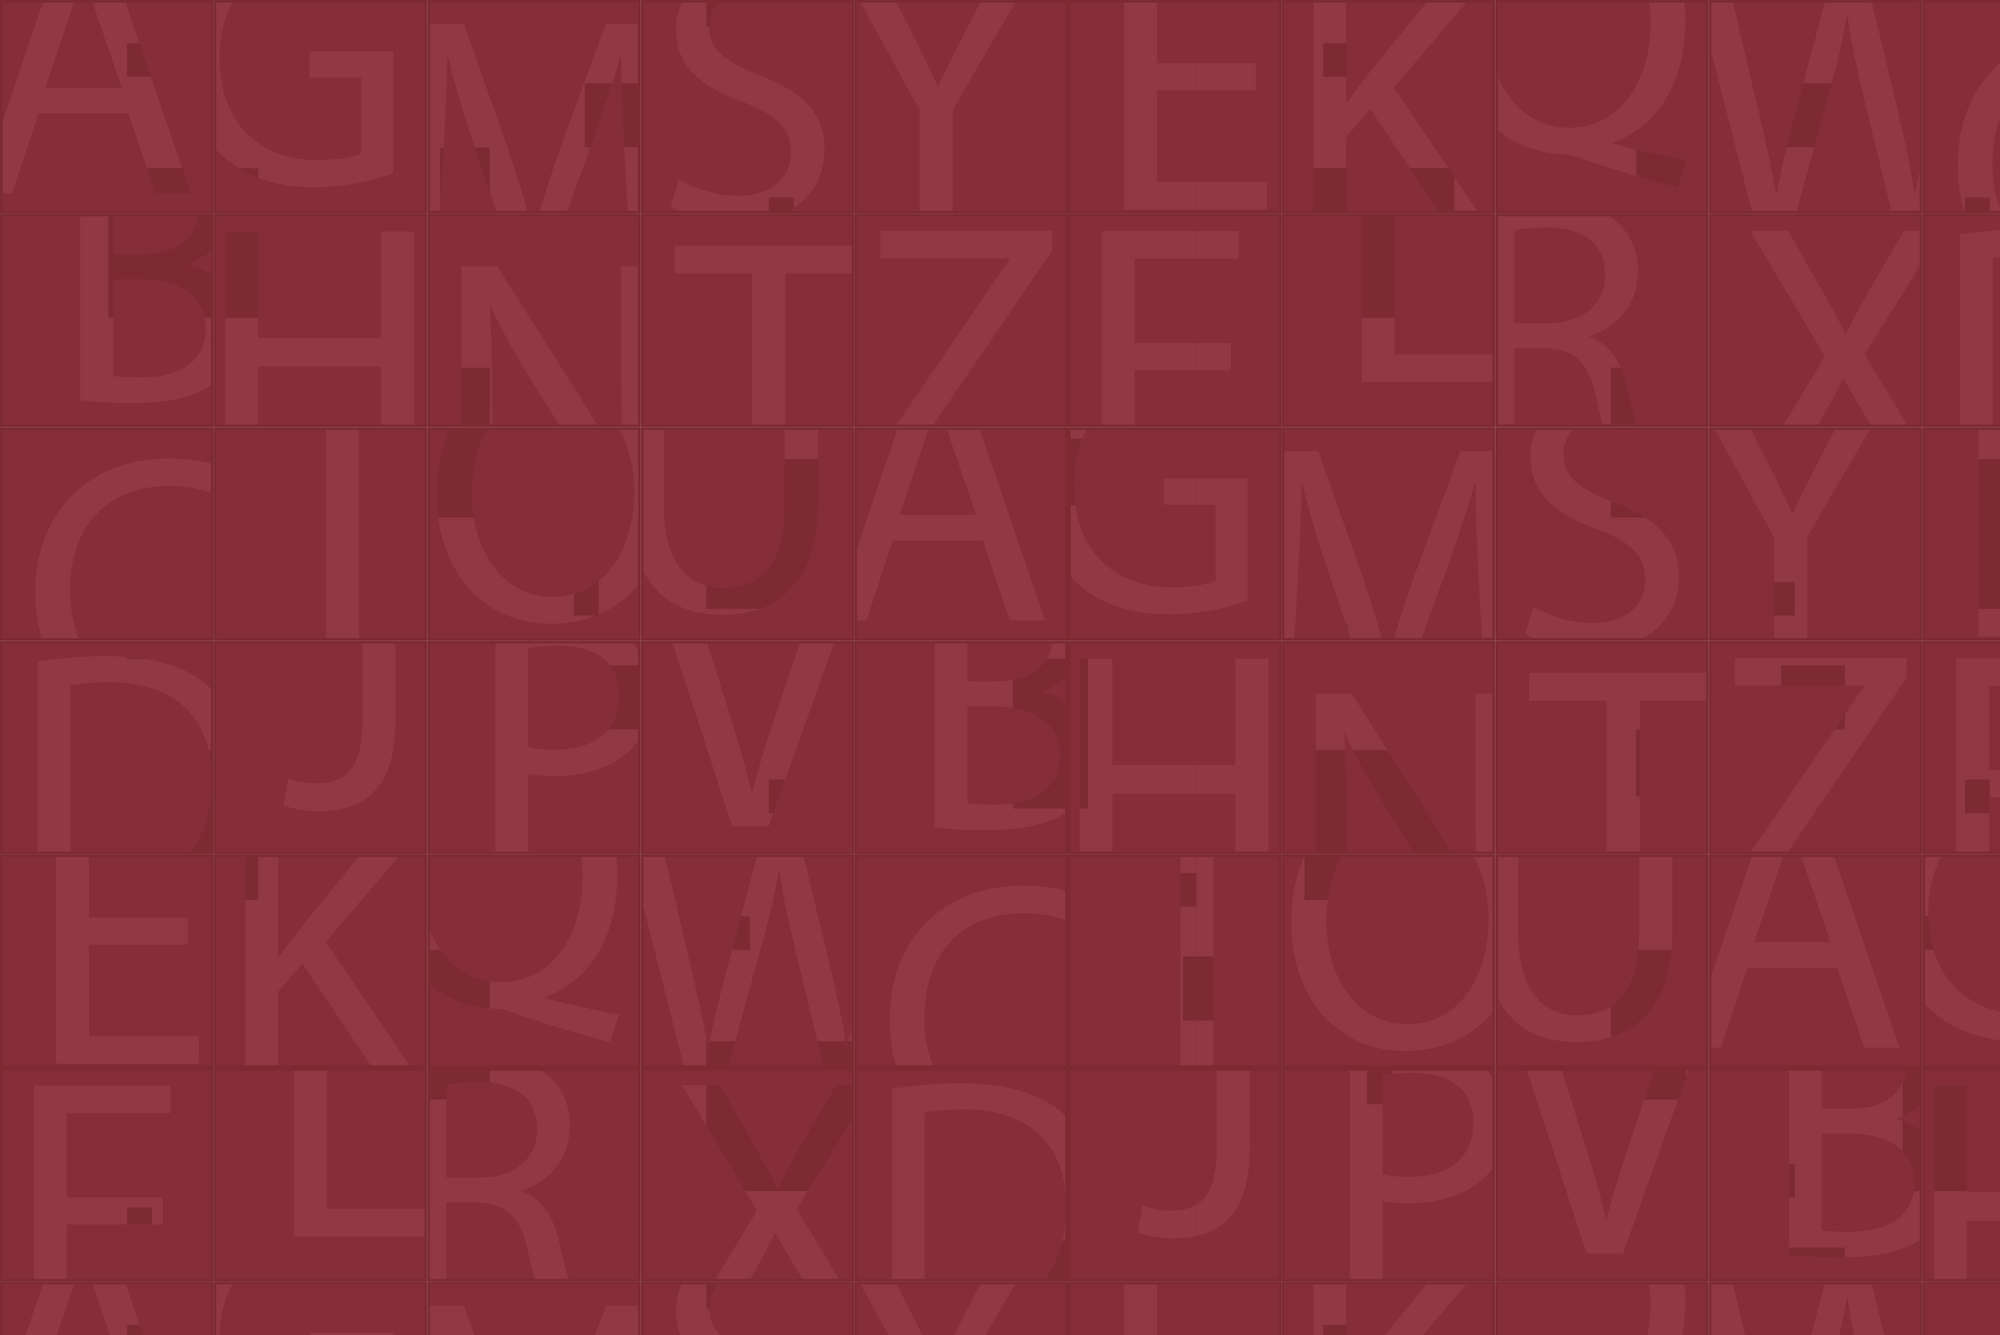             Design Fototapete Quadrate mit verschiedenen Mustern rot auf Perlmutt Glattvlies
        